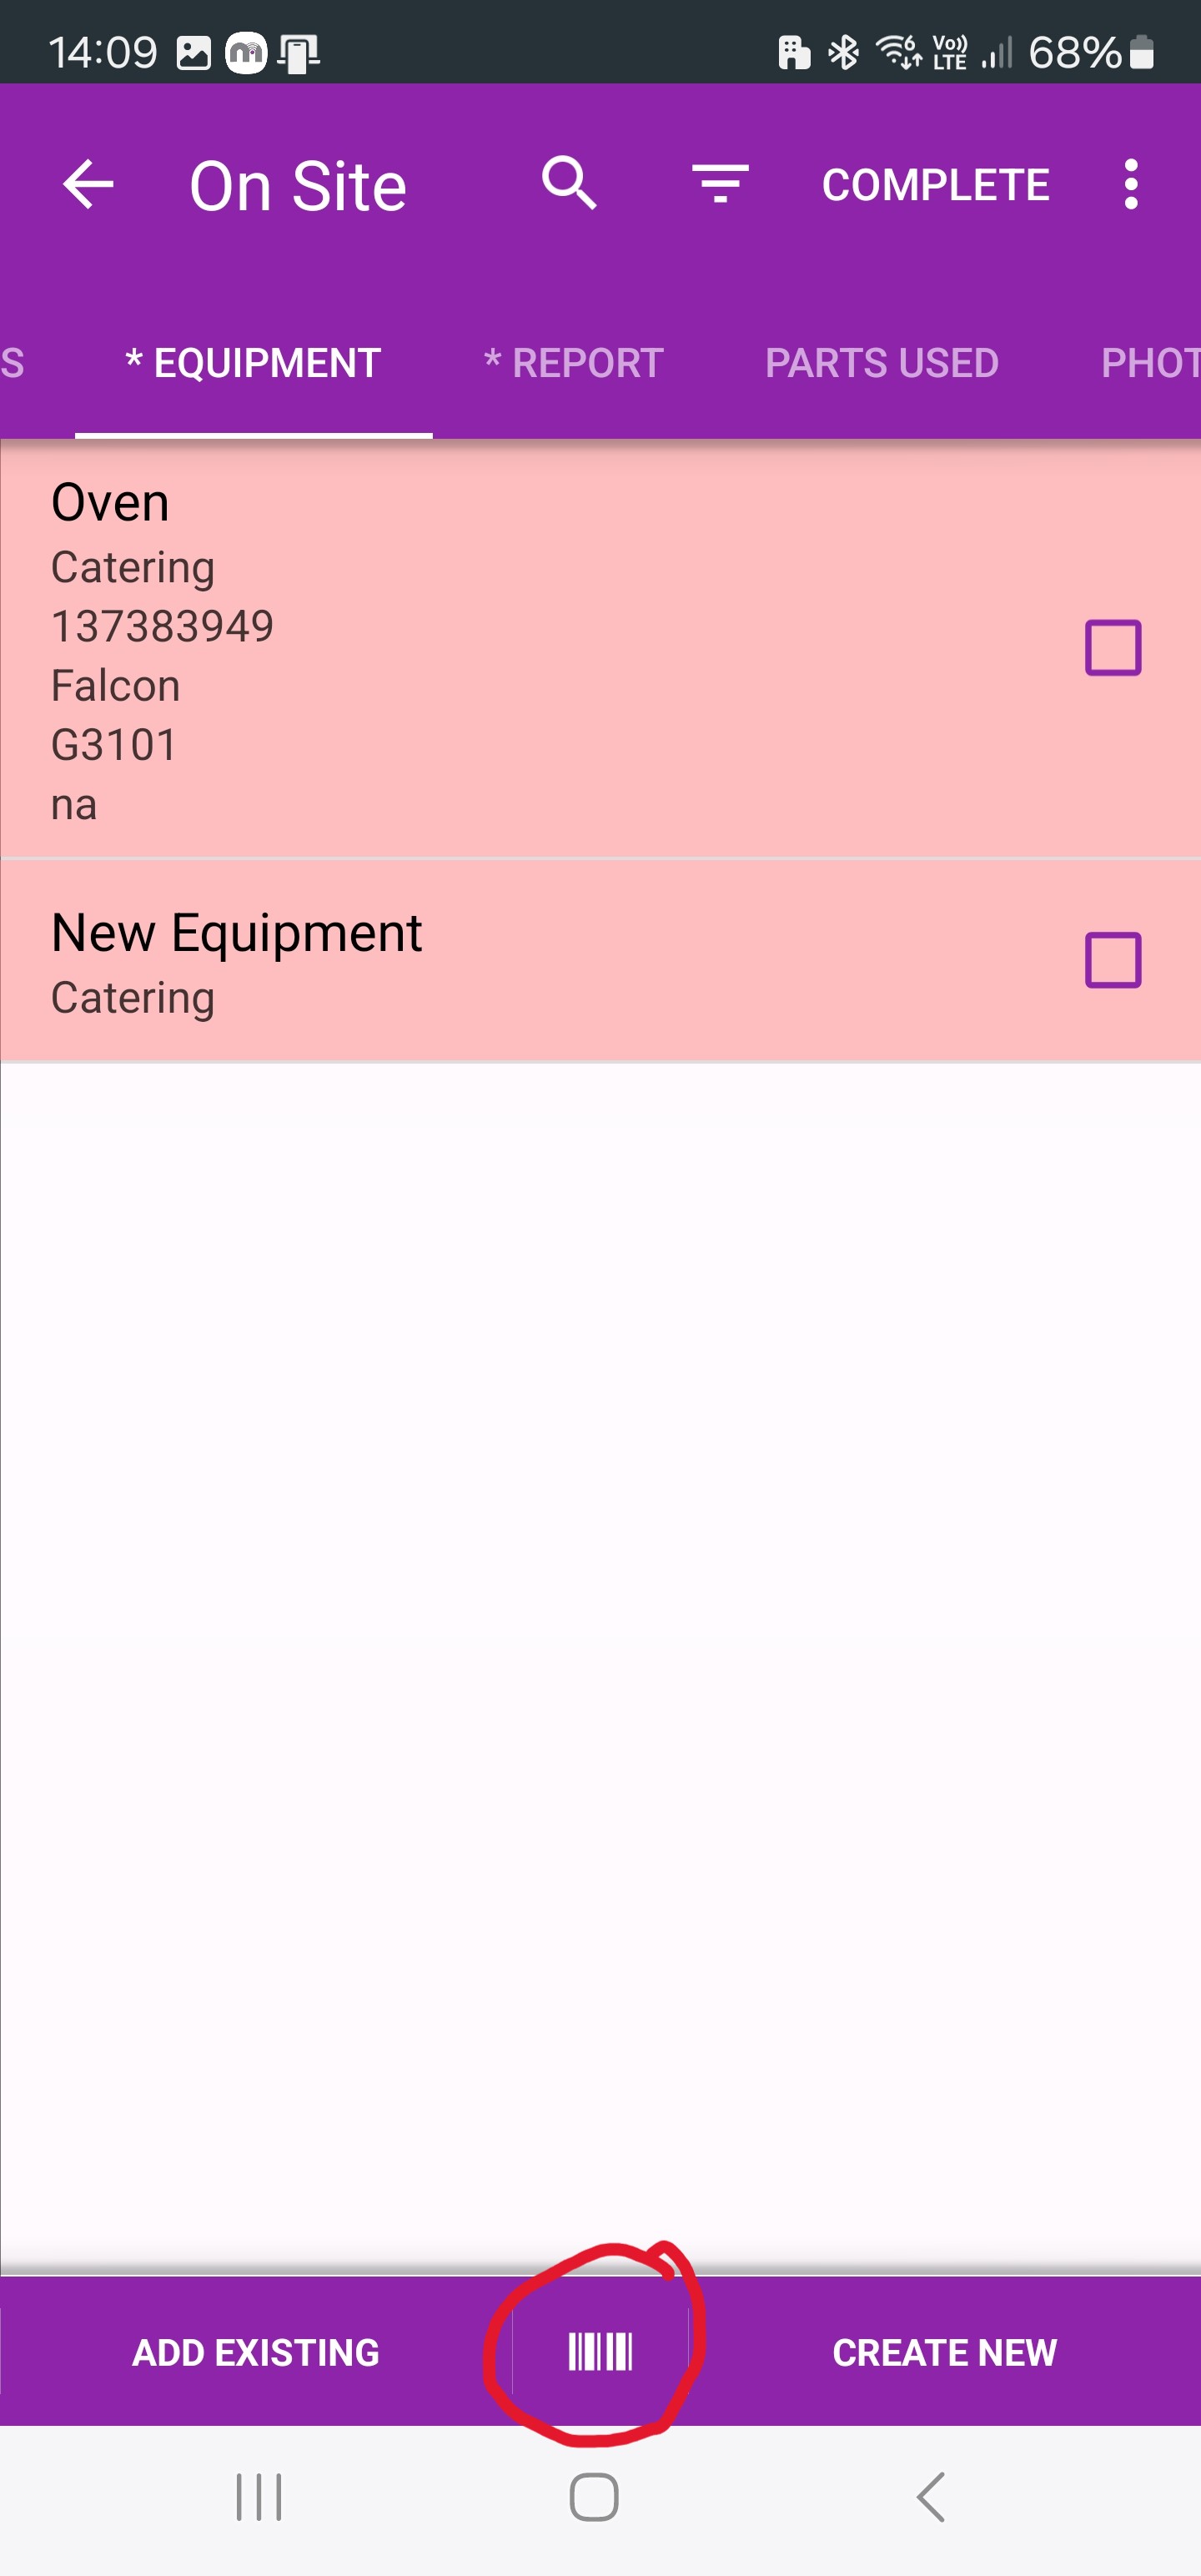 bqr-equipment-list-filter.jpg